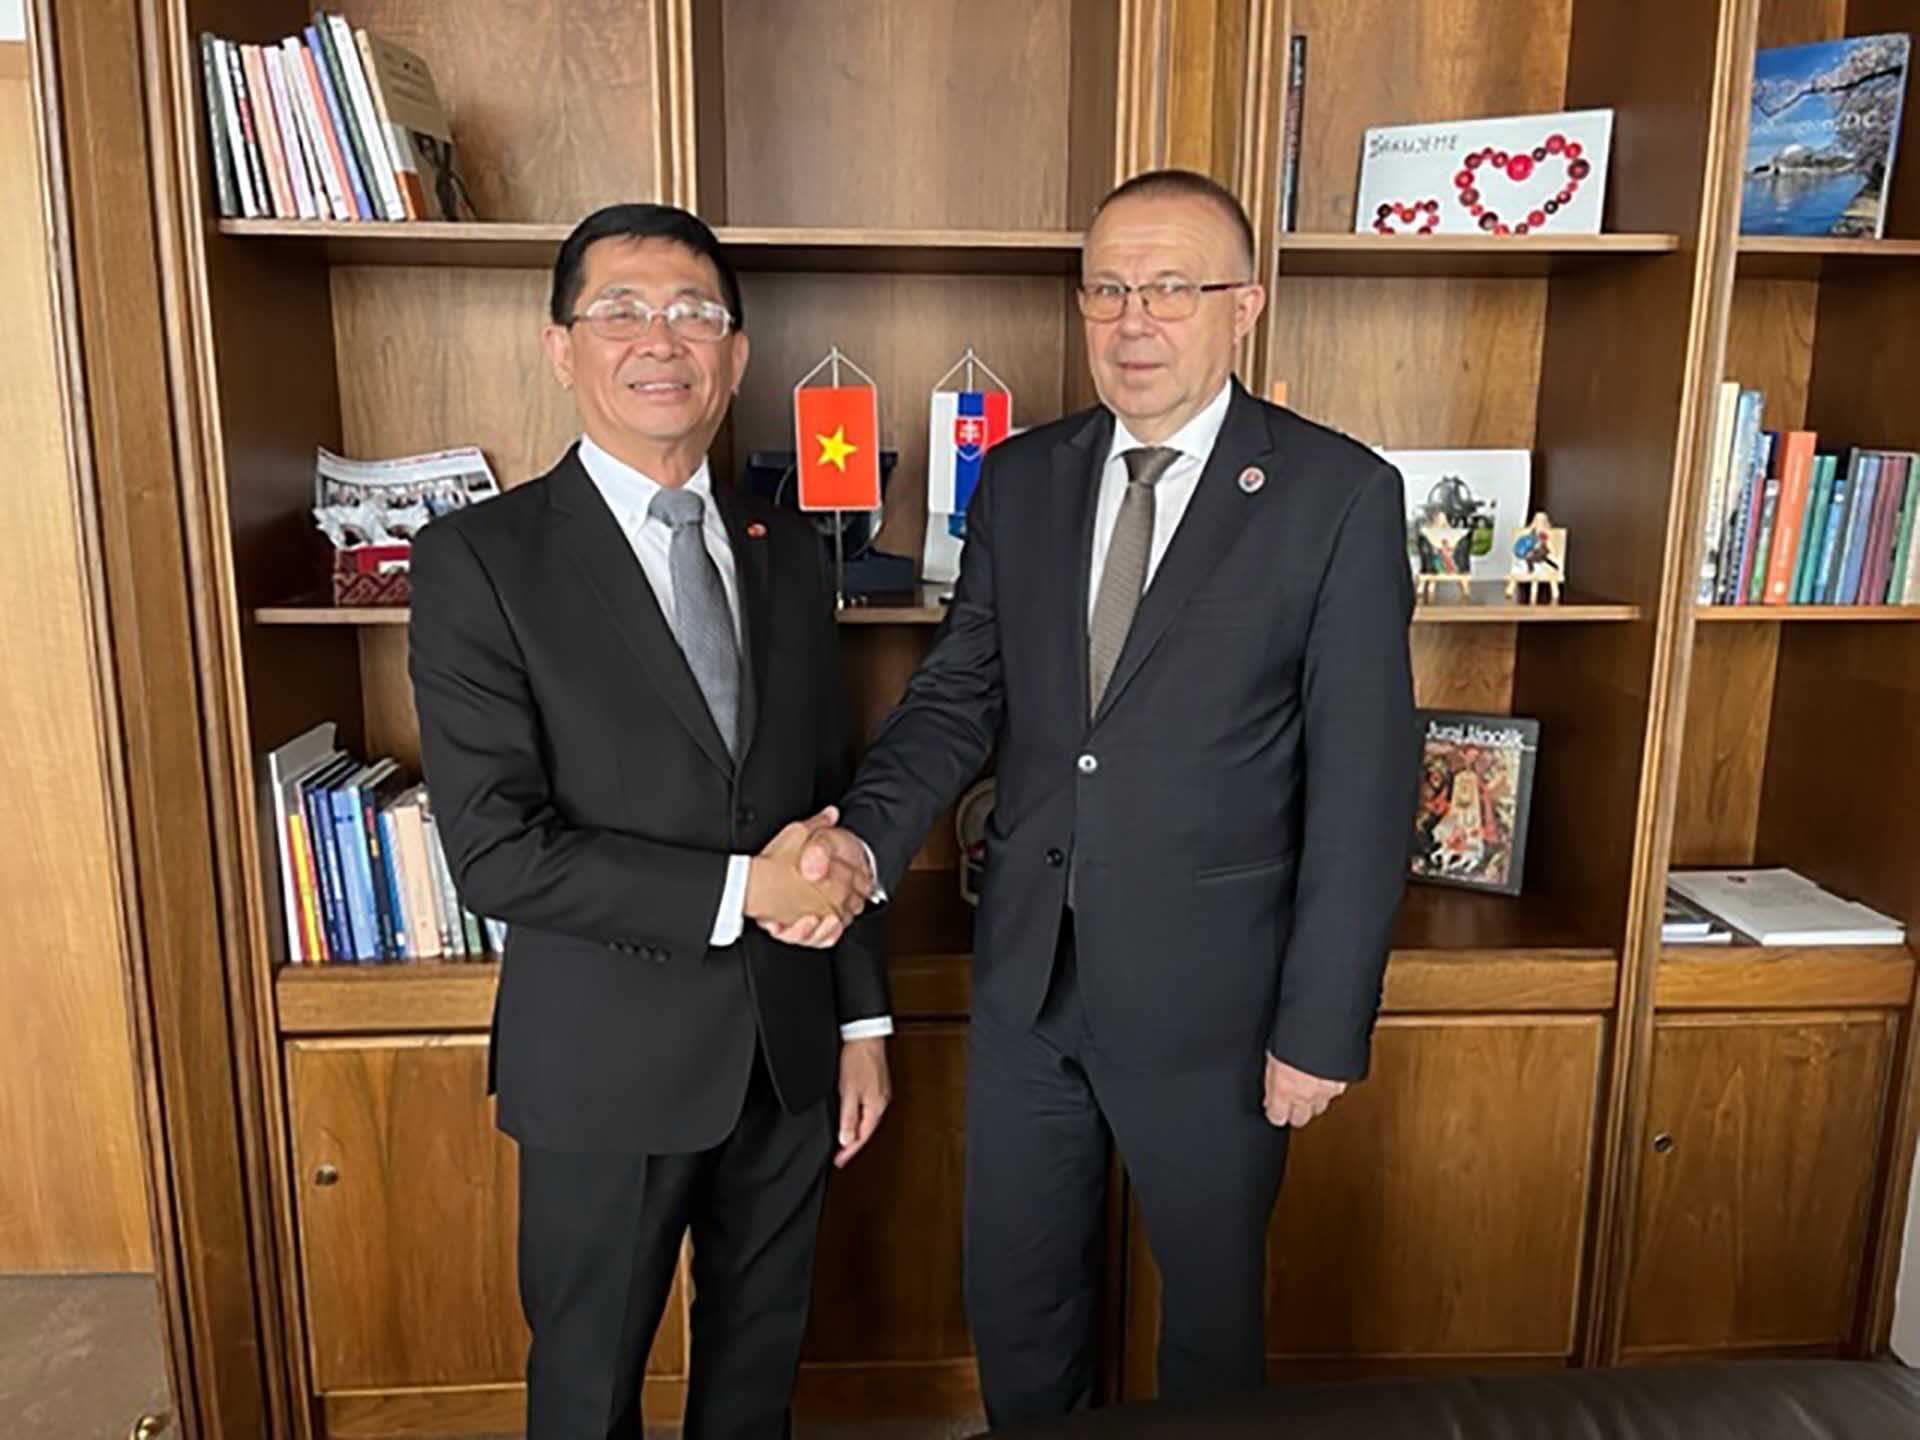 Đại sứ Việt Nam tại Cộng hòa Slovakia Nguyễn Tuấn chào xã giao Phó chủ tịch Quốc hội Slovakia Milan Laurancik. 